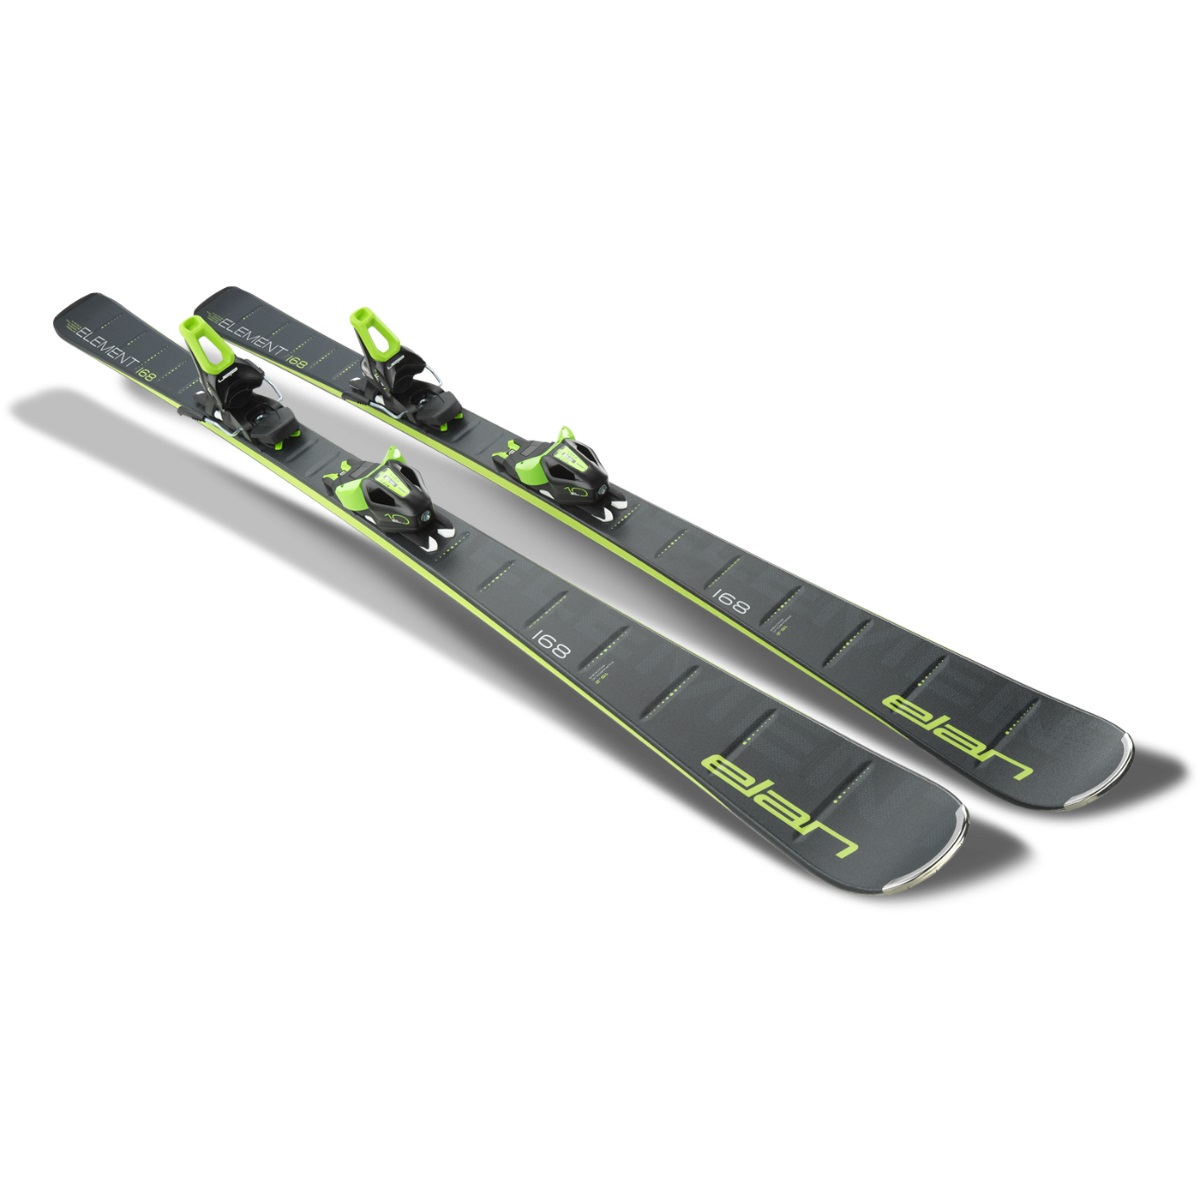 Горные лыжи с креплениями ELAN 2020-21 Element Black LS + EL 10 Shift